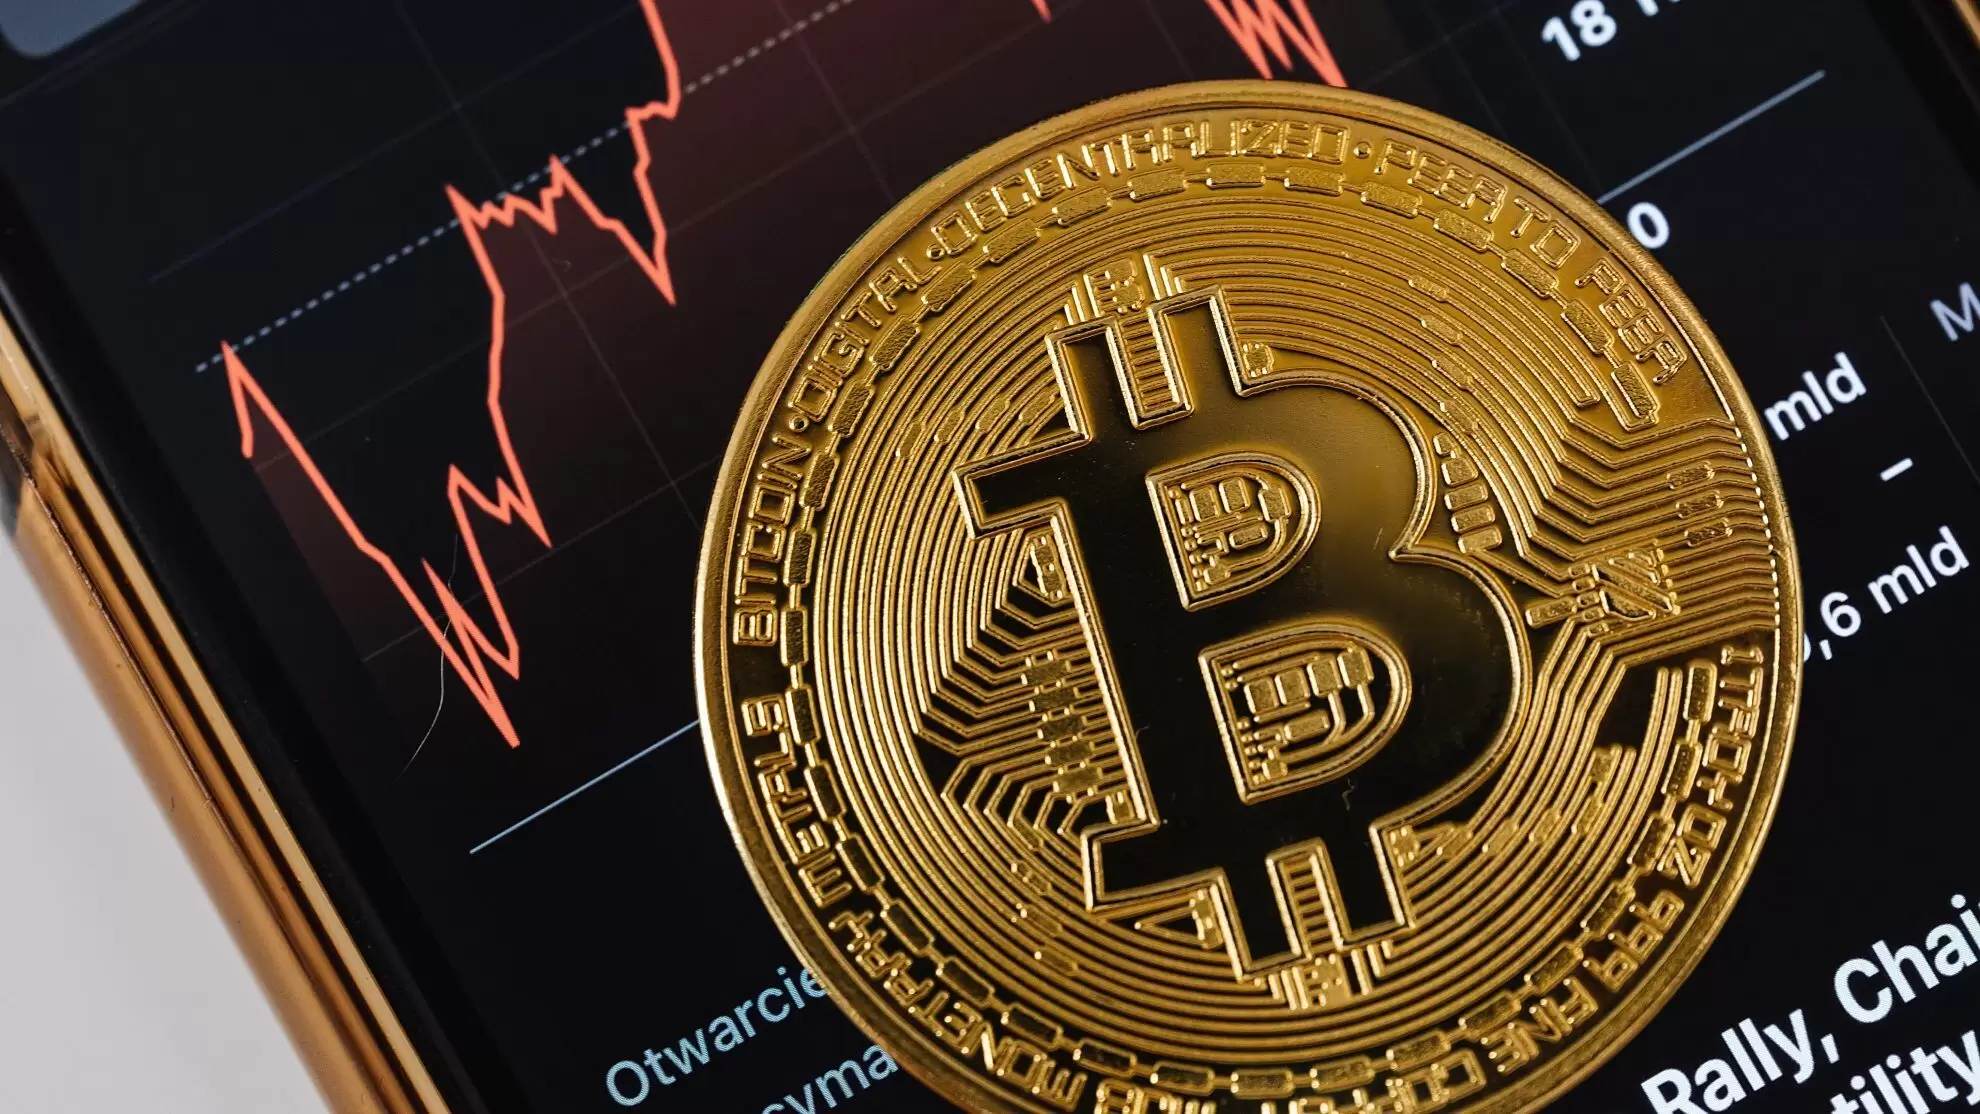 Bitcoin Yeniden 40.000 Dolar Bandına Düştü! Analist Düşüşü Yorumladı